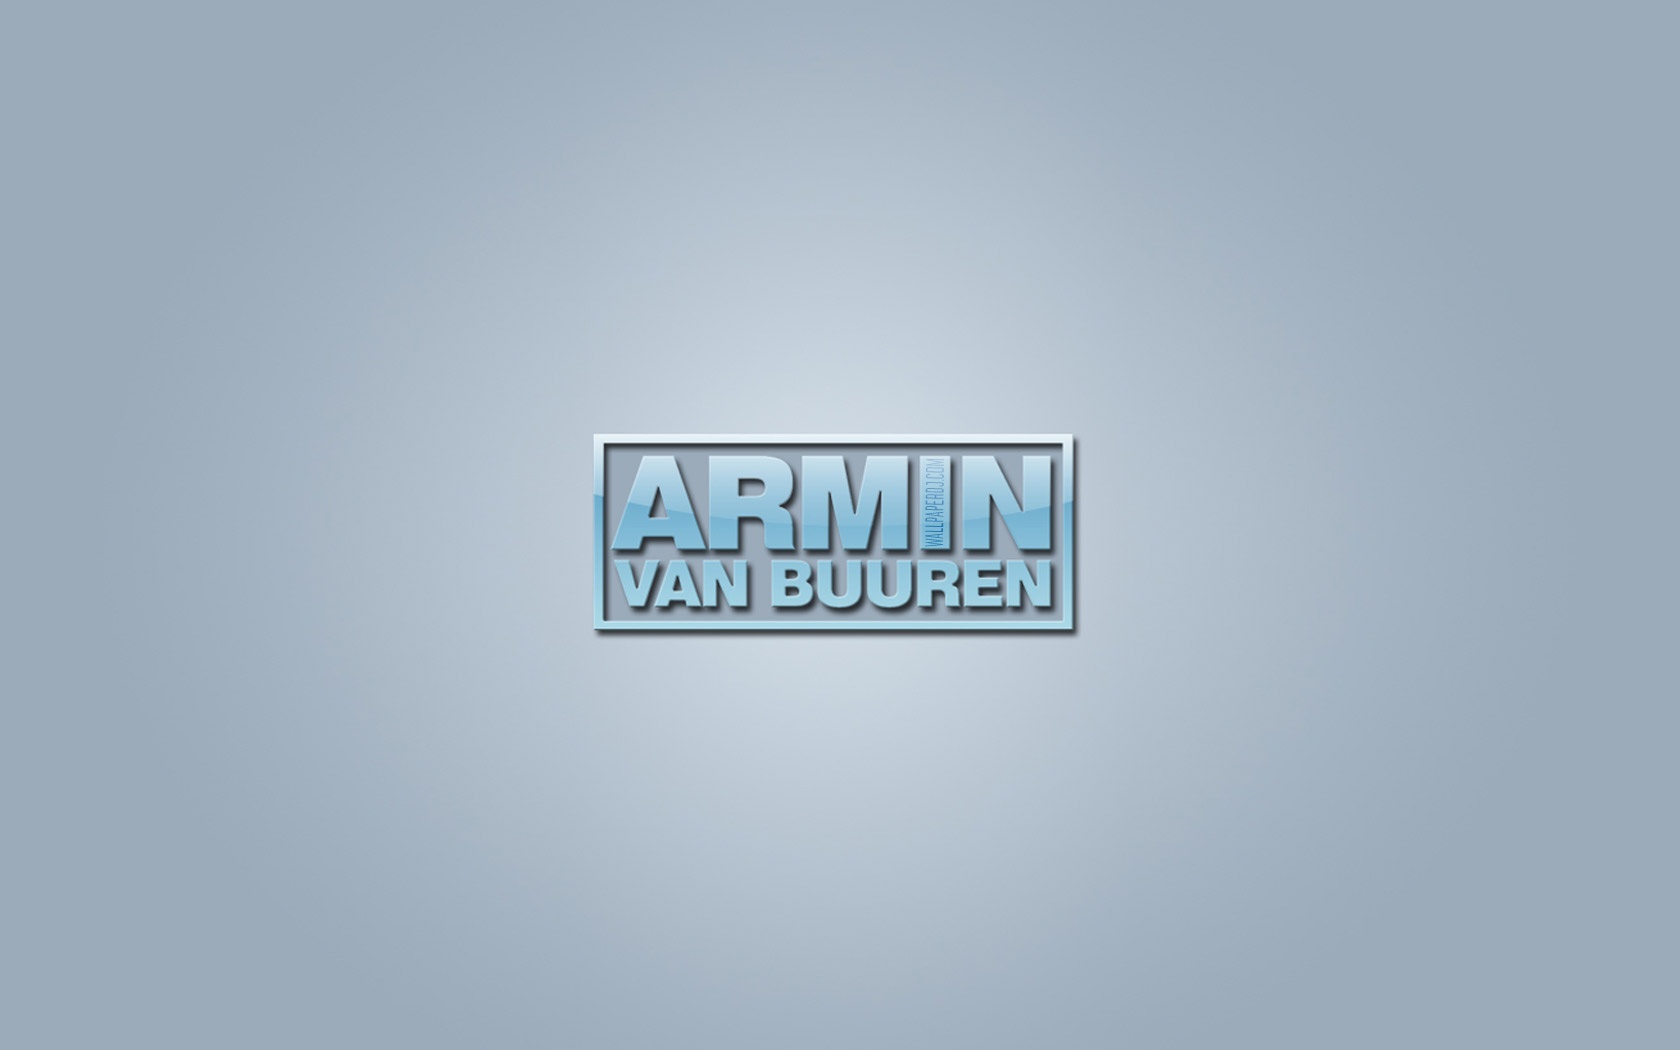 Armin Van Buuren logo HD and Wide Wallpapers